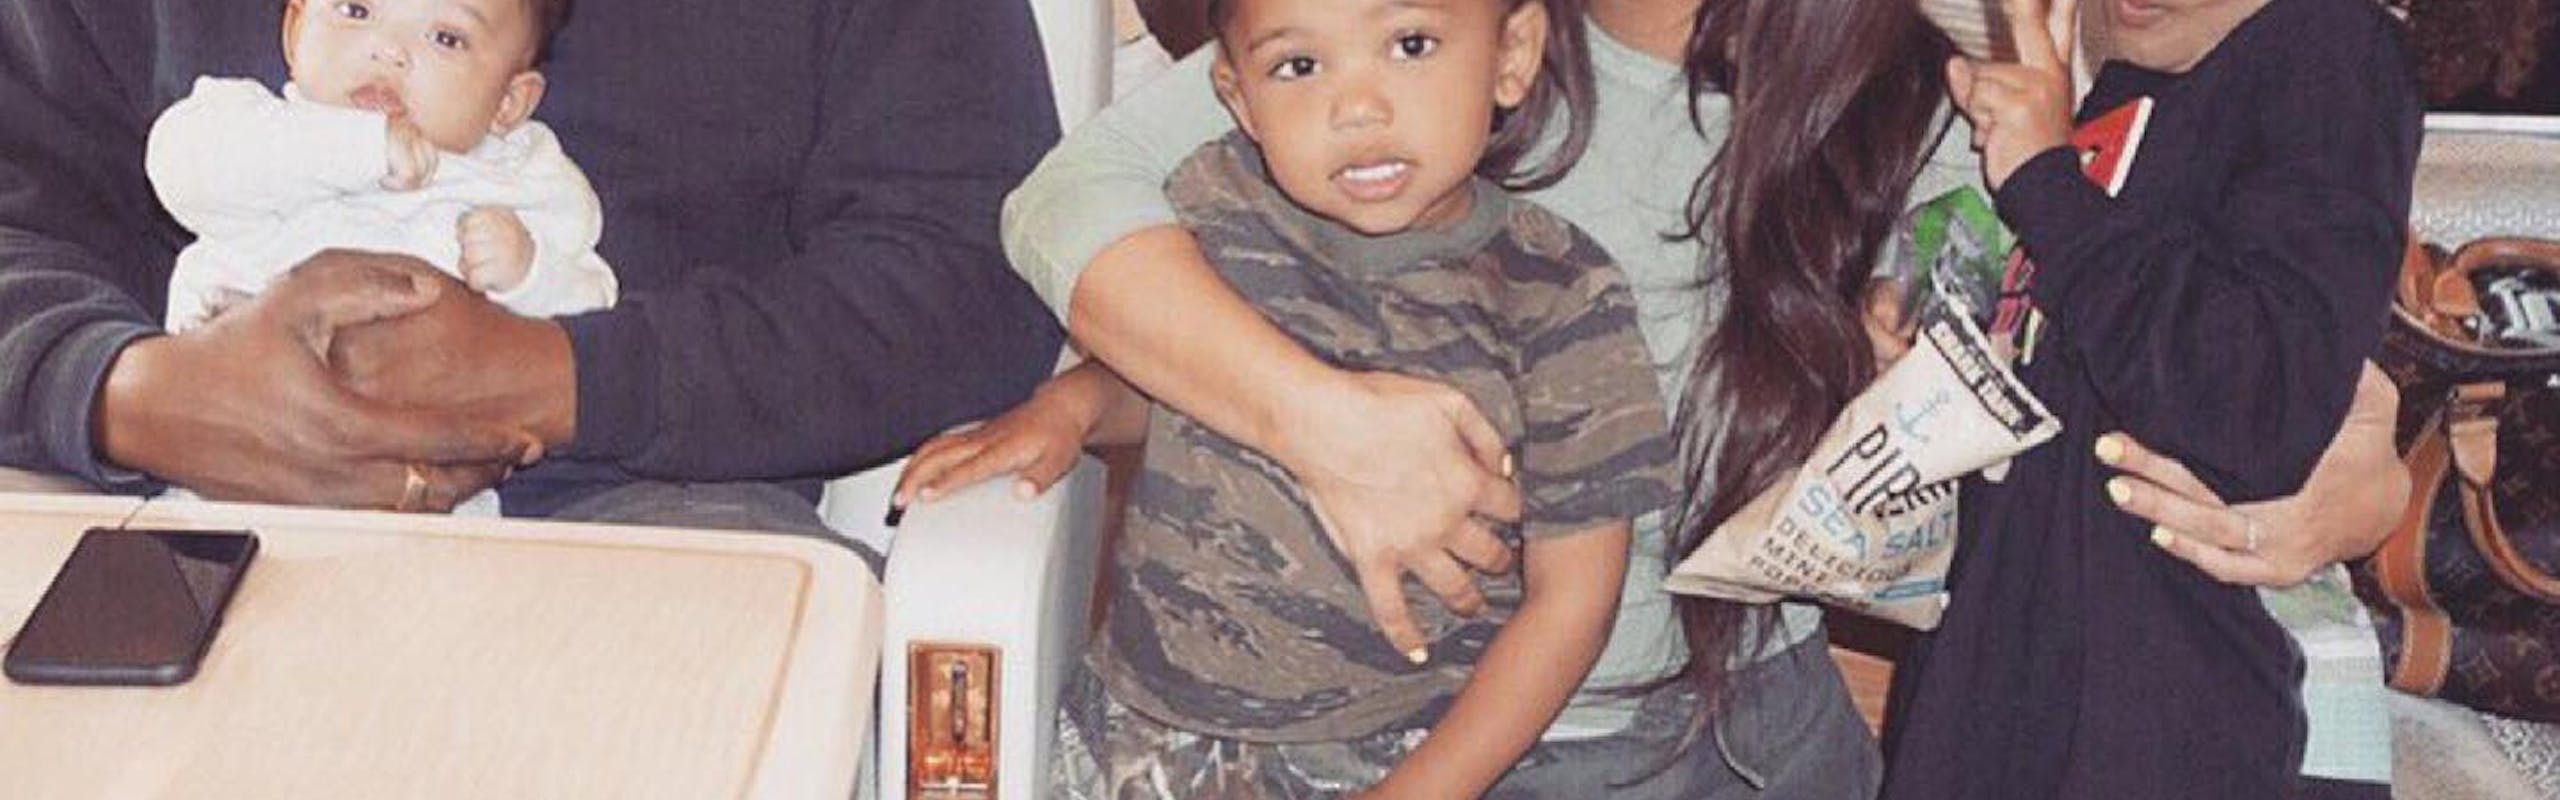 Kim Kardashian e Kanye West ao lado dos filhos (Foto: reprodução/instagram)